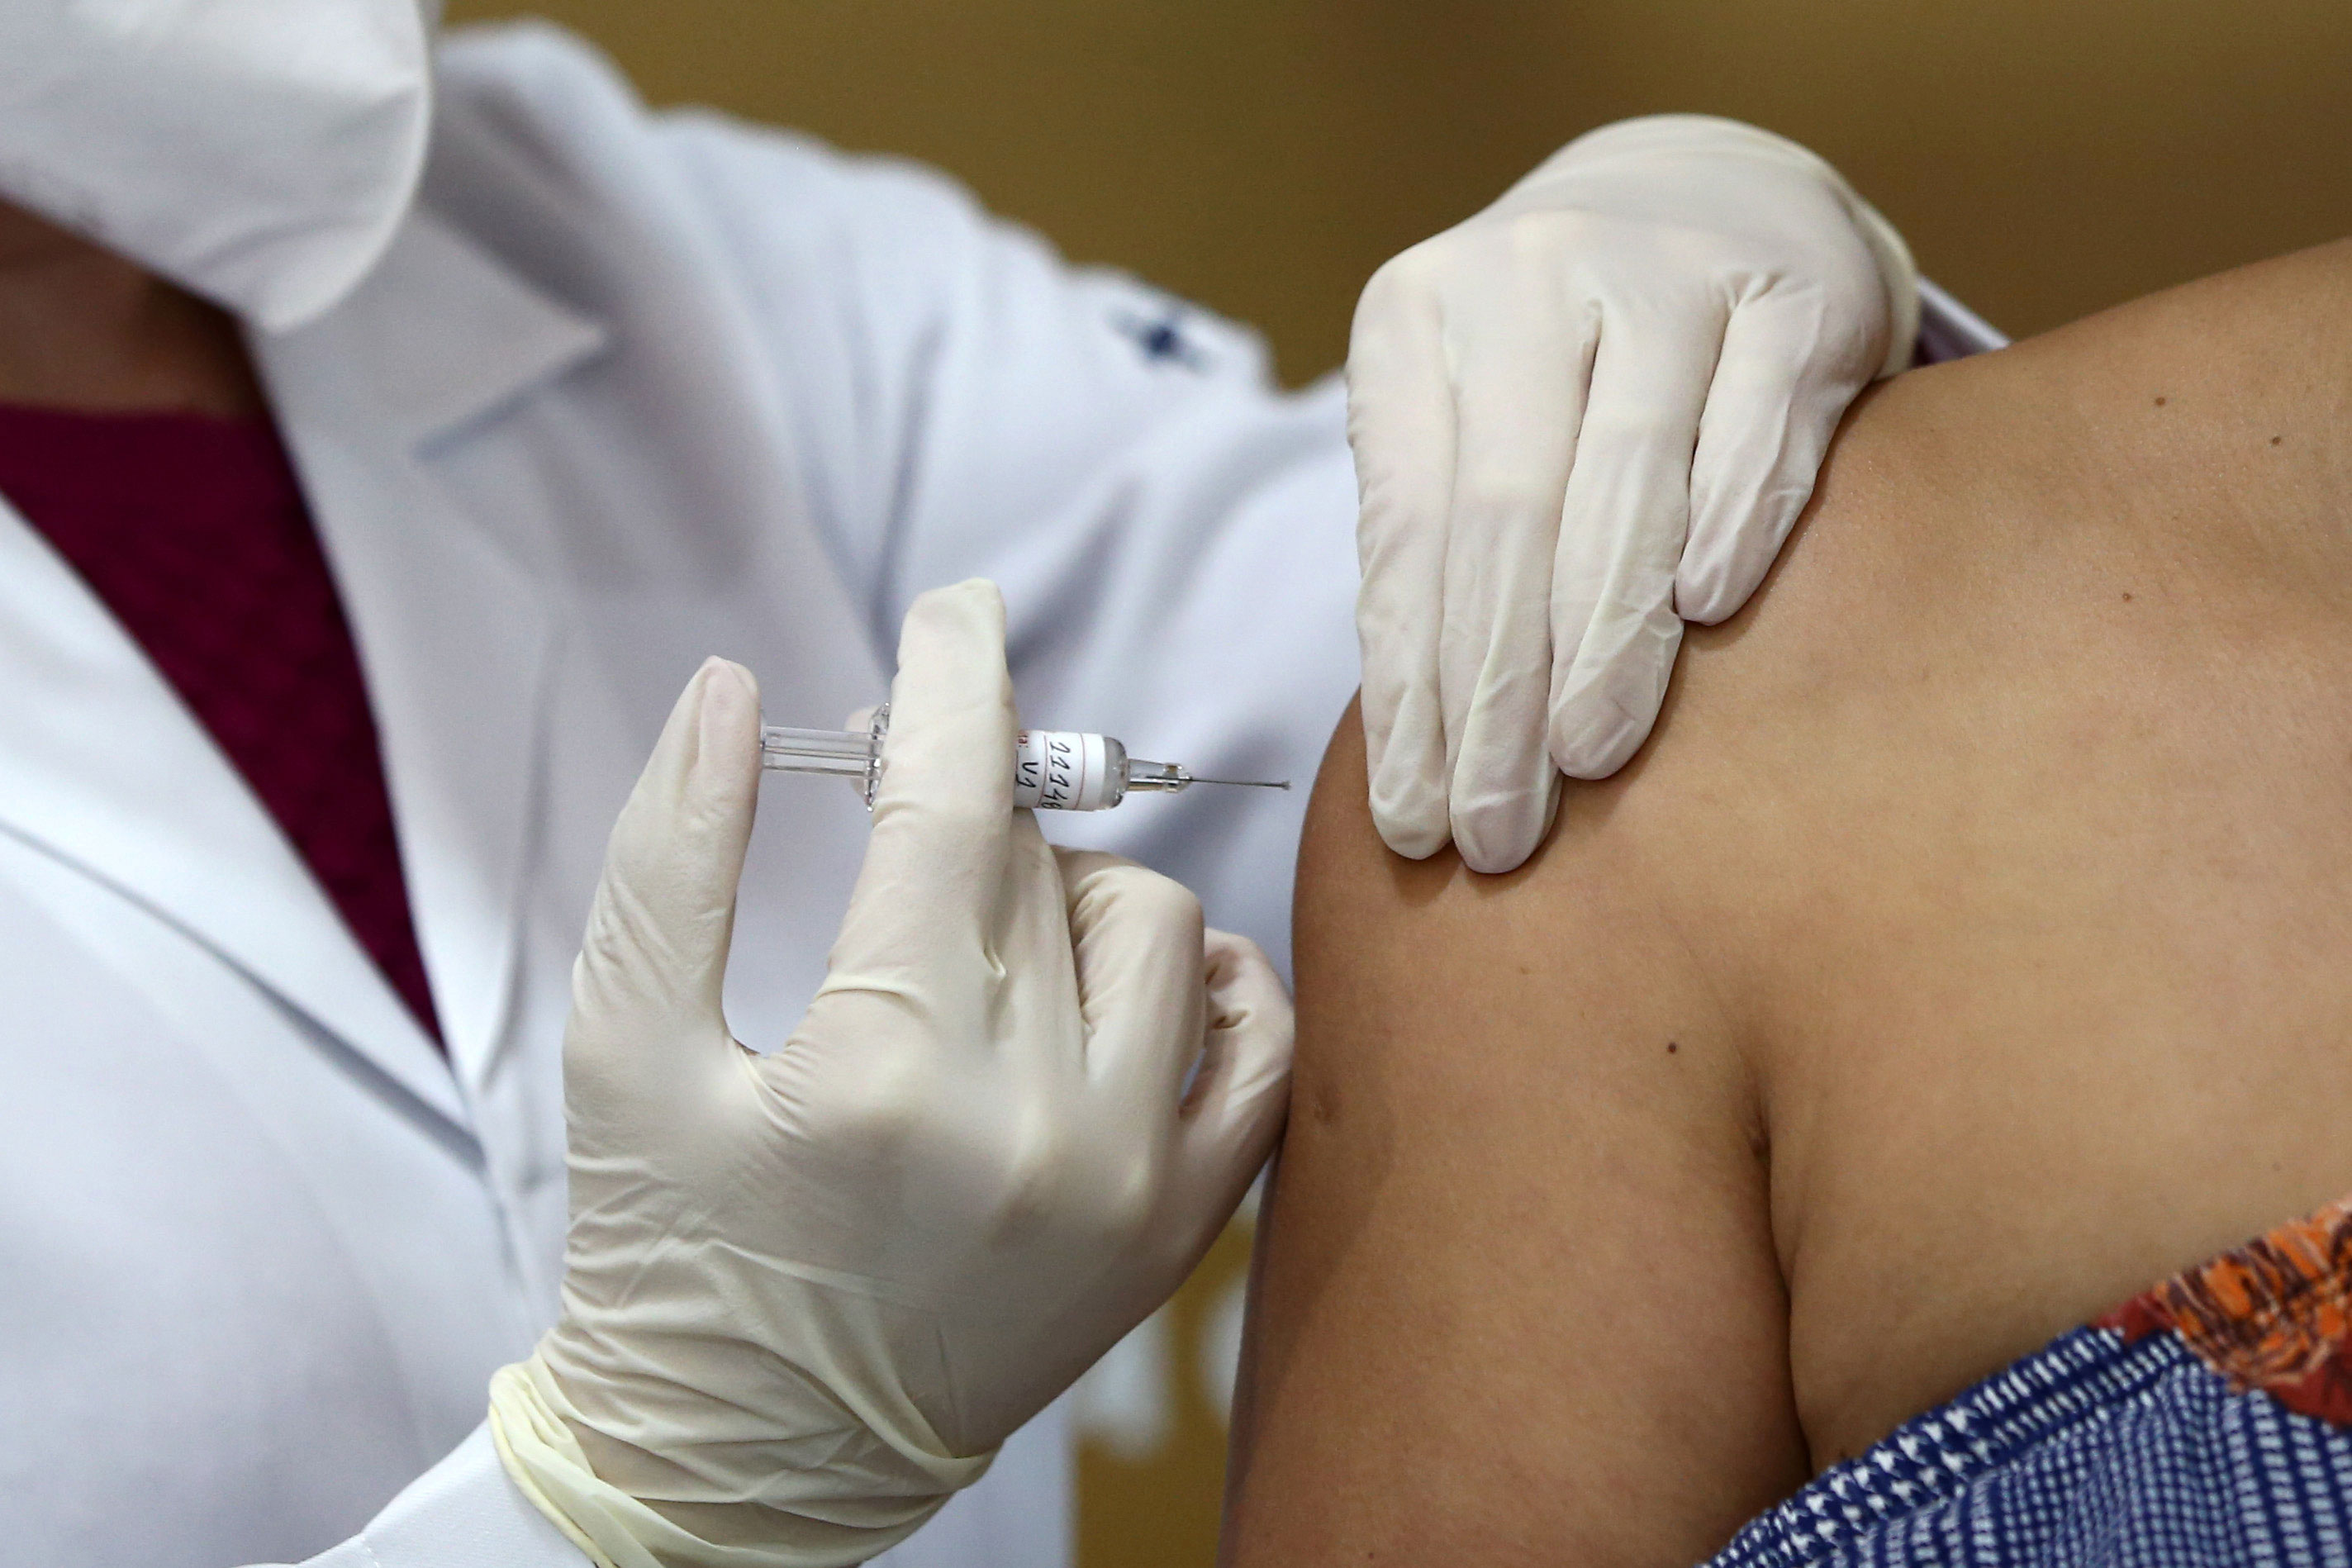 Voluntário recebe dose em teste da potencial vacina contra Covid-19 Coronavac